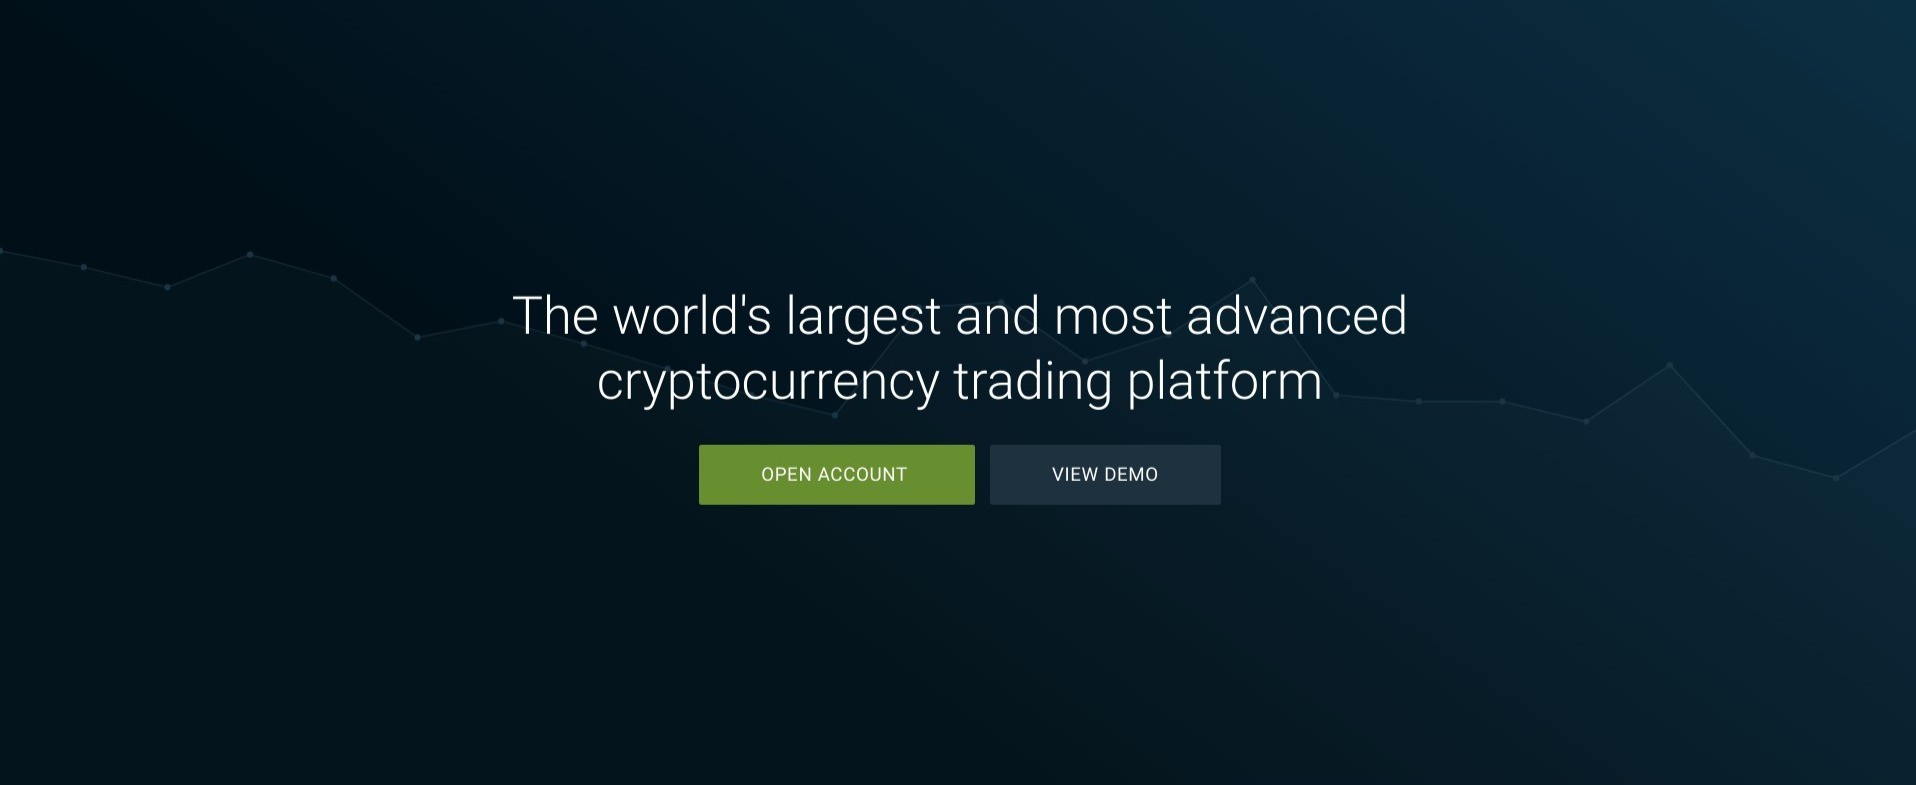 Pàgina inicial de Bitfinex